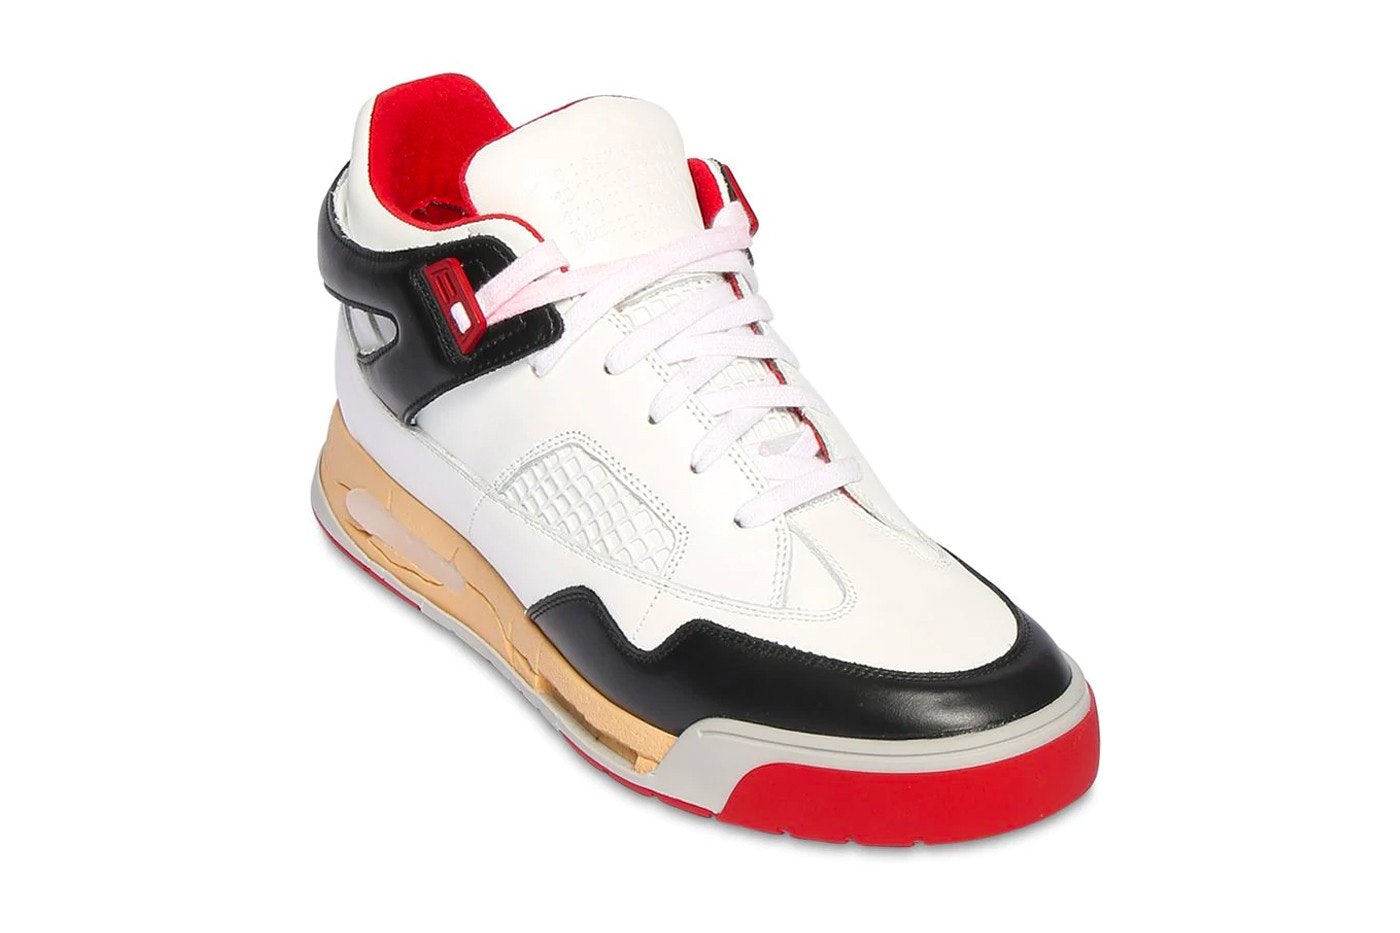 high fashion, bootleg Air Jordan 4 sneaker